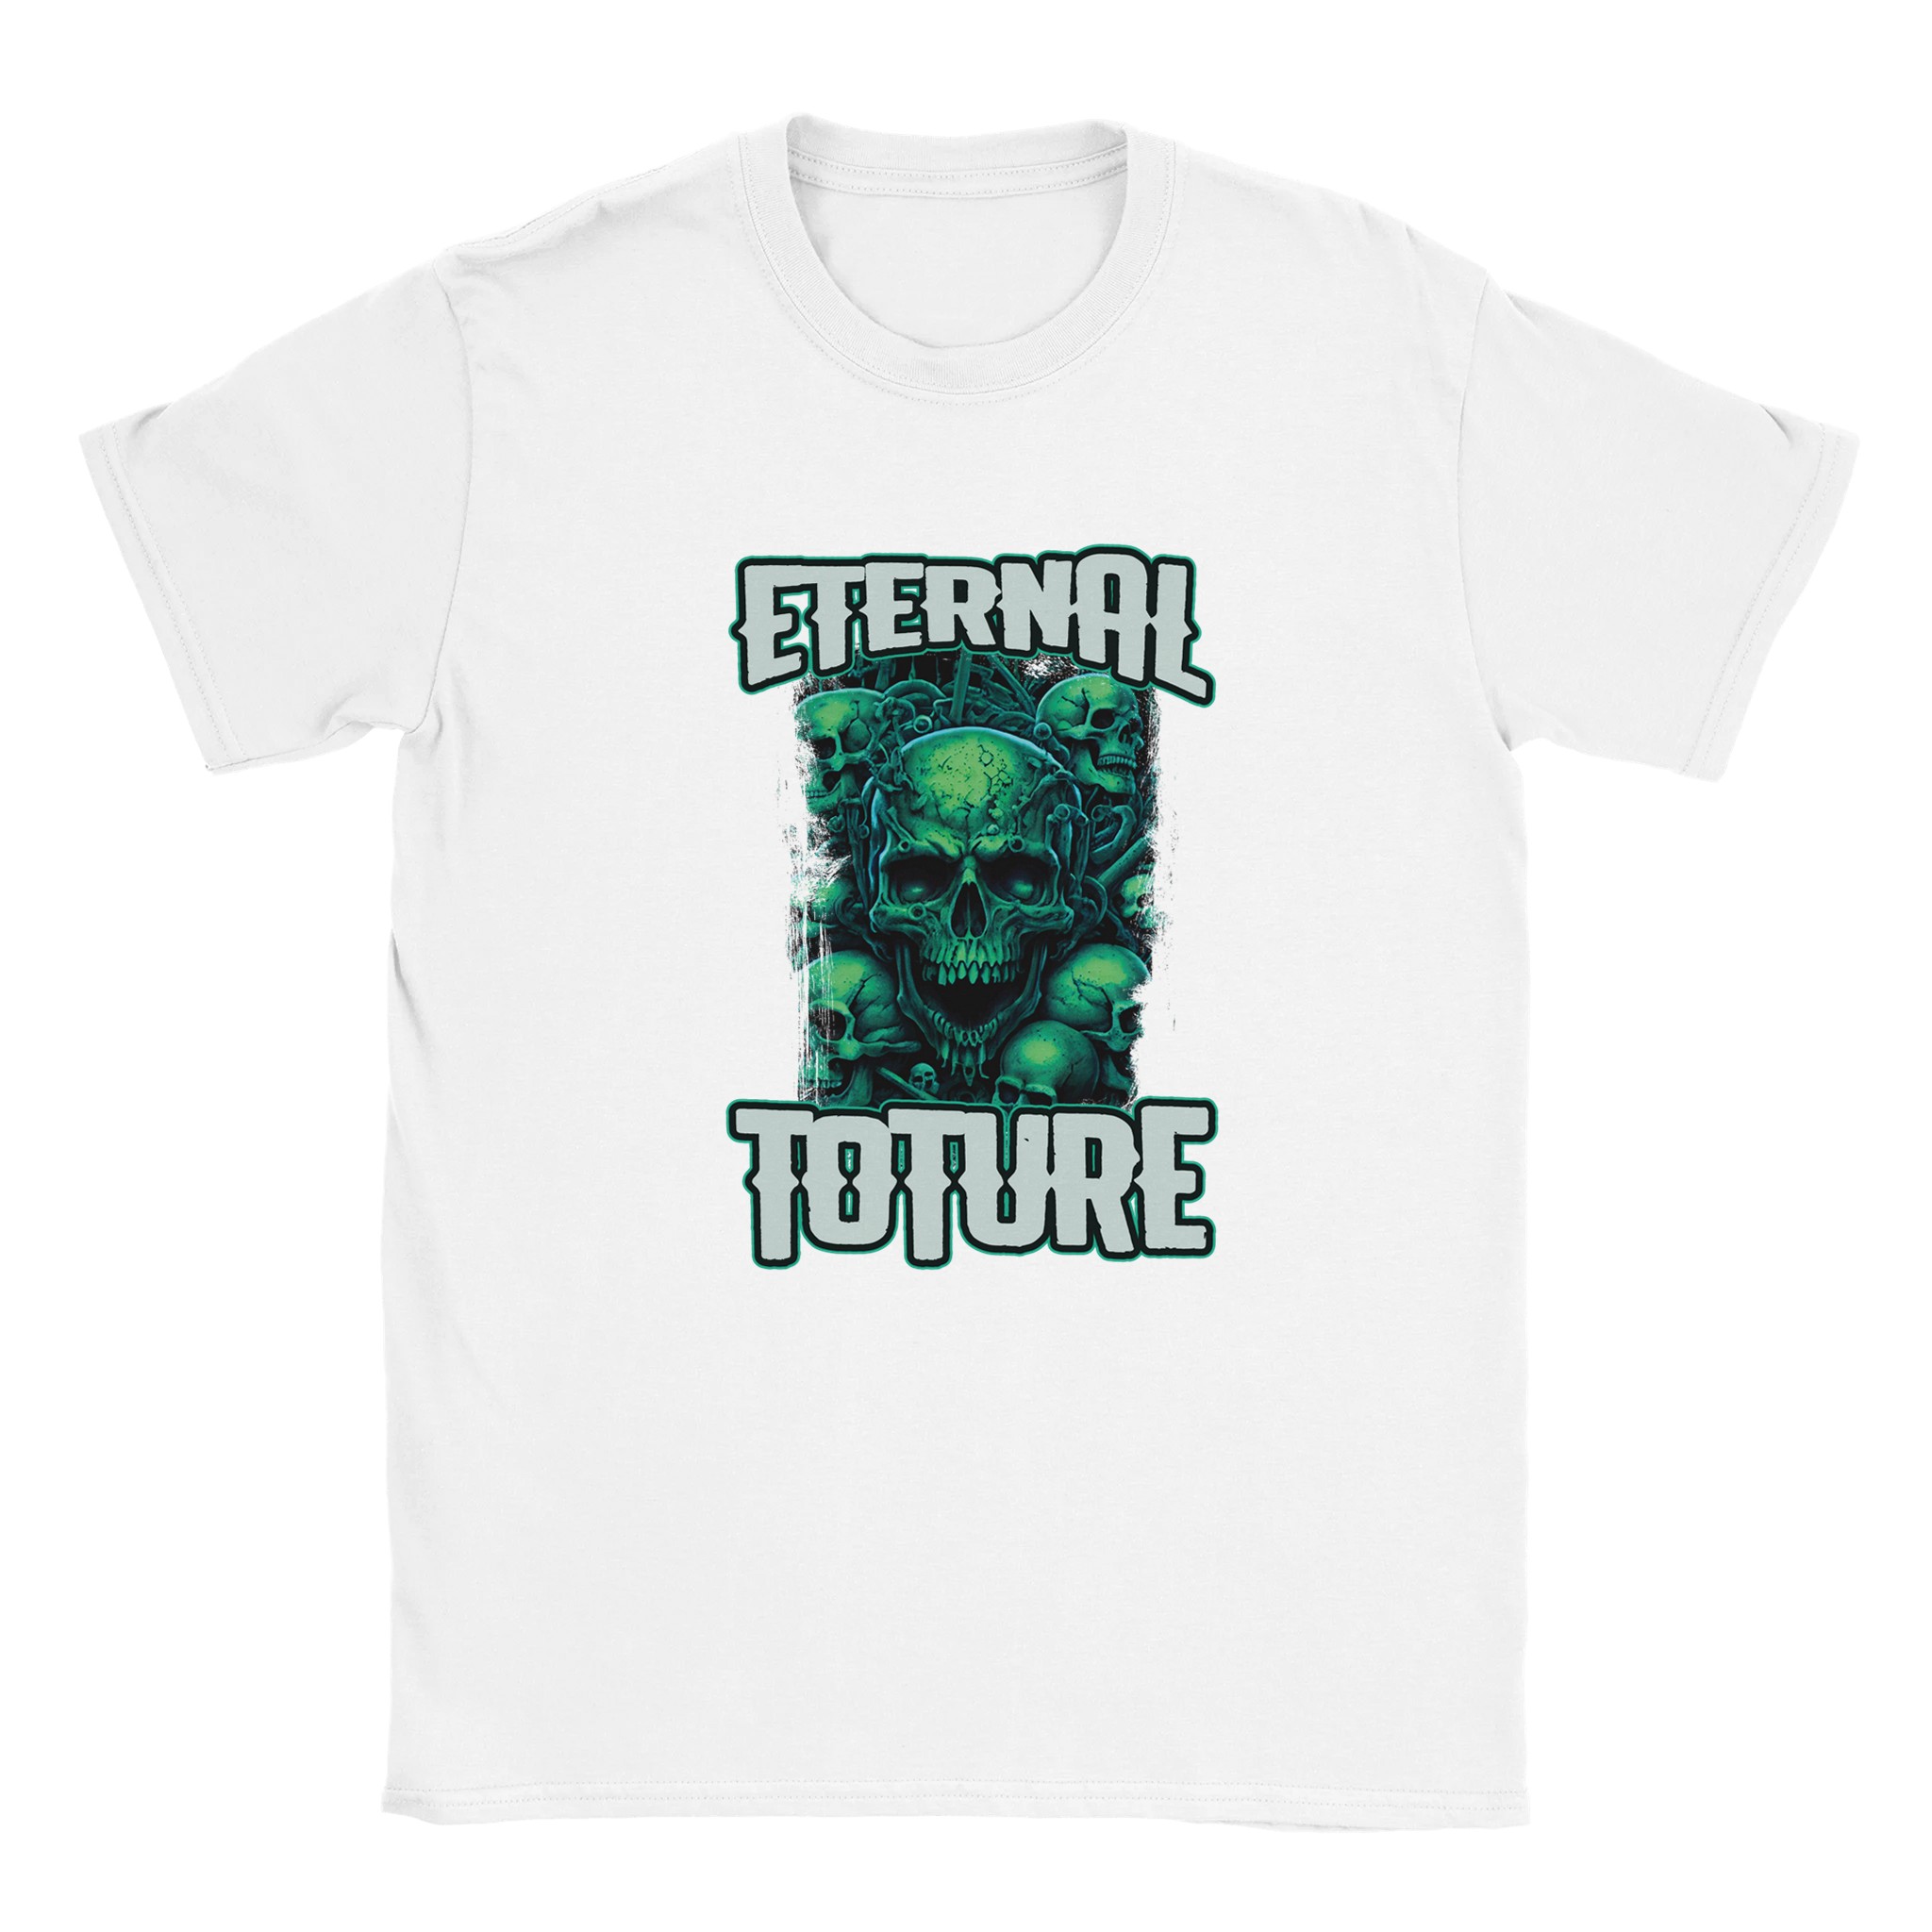 Eternal Torture tshirt design